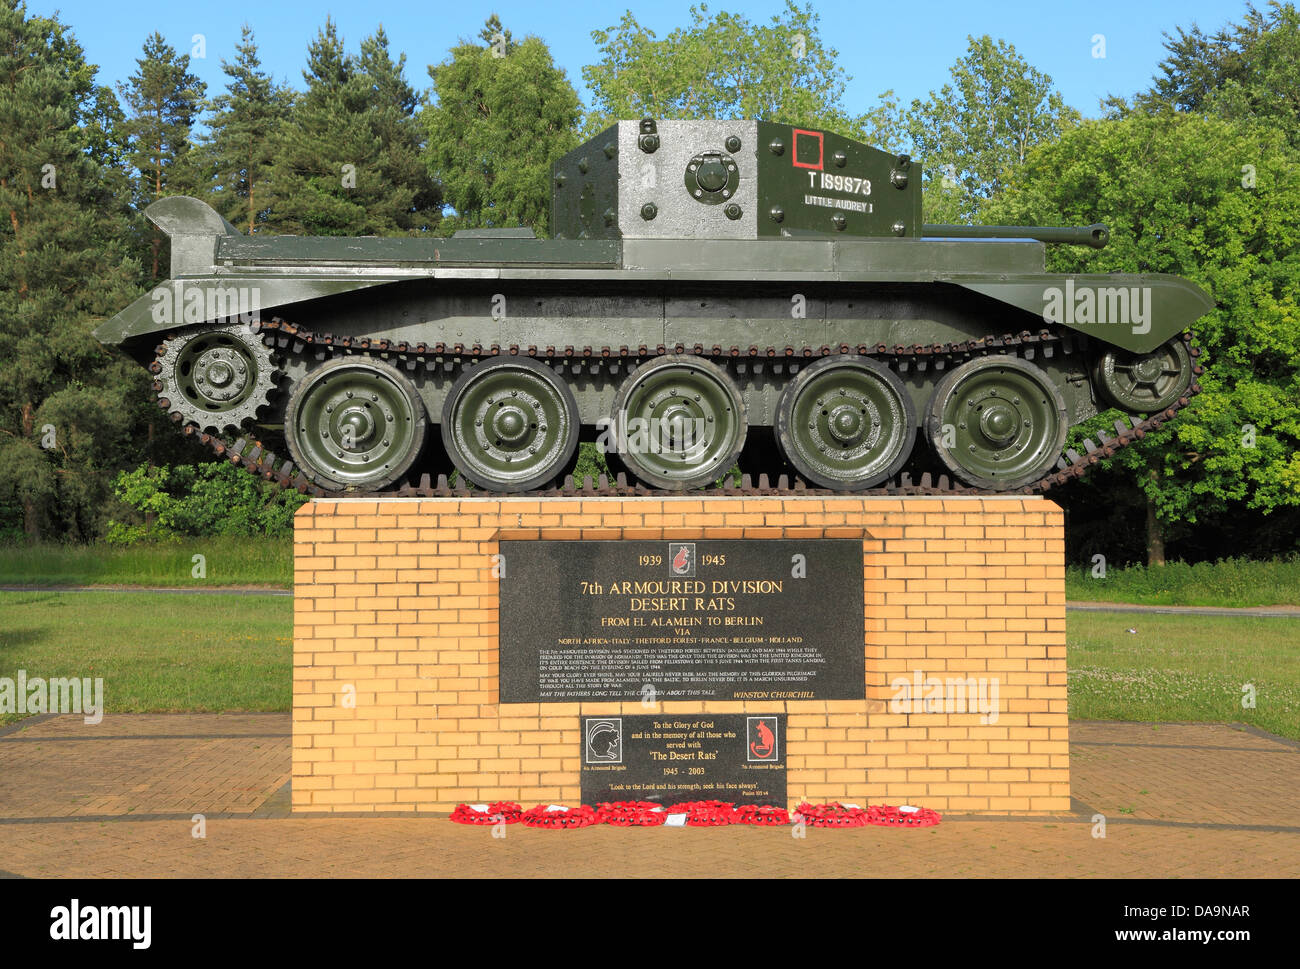 Las Ratas del Desierto Memorial, la 7ª División Acorazada, Bosque de Thetford, Norfolk, Inglaterra, Segunda Guerra Mundial memoriales, regimiento de tanques Foto de stock